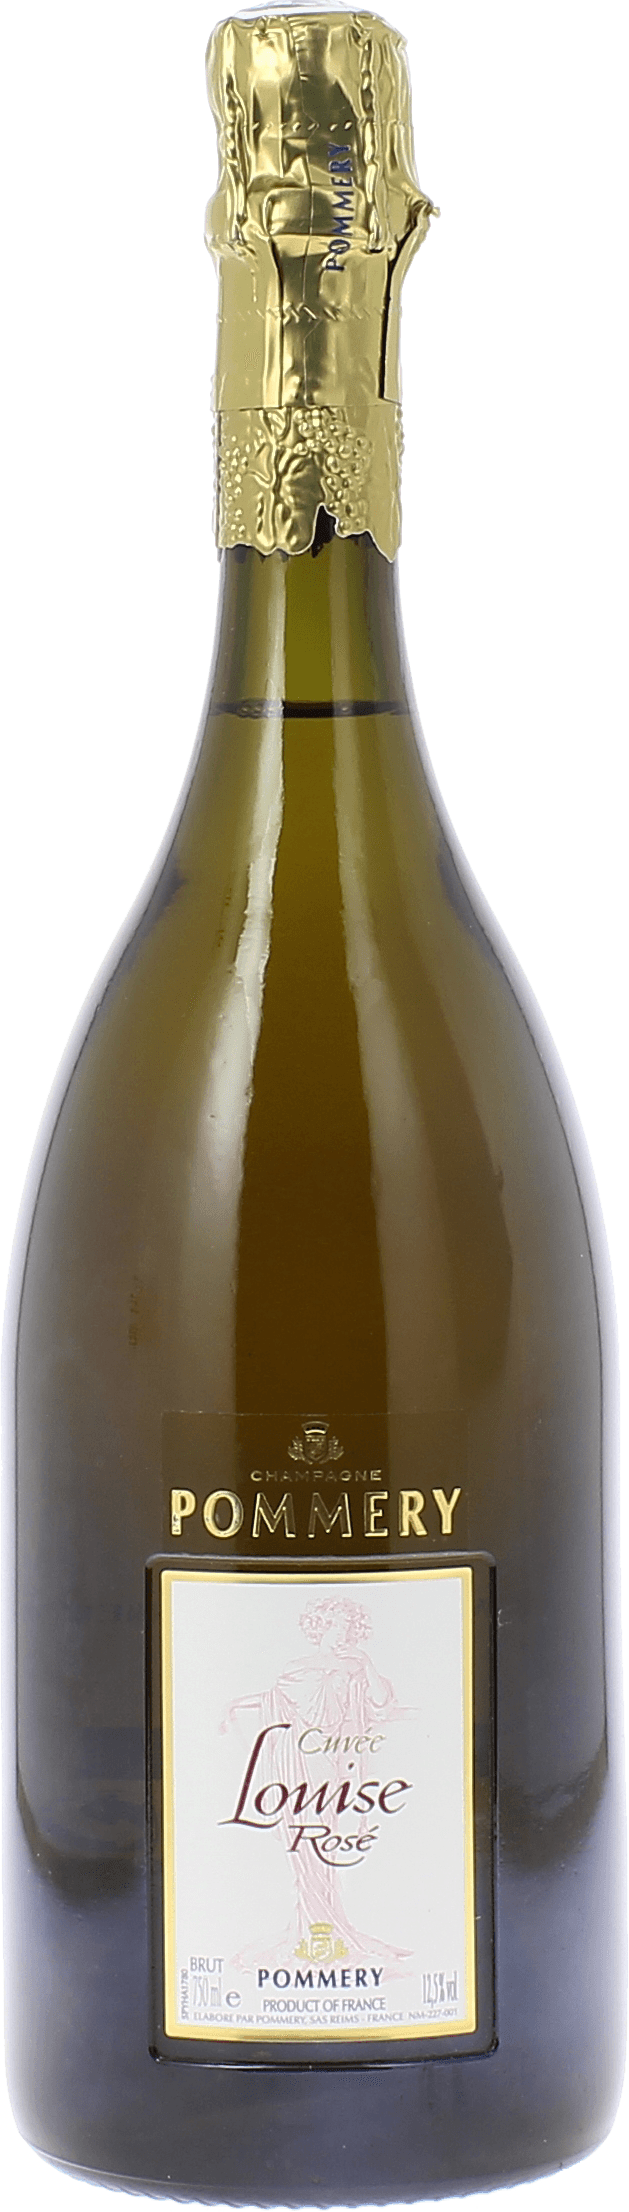 Pommery cuve louise brut ros millsim 2000  Pommery, Champagne